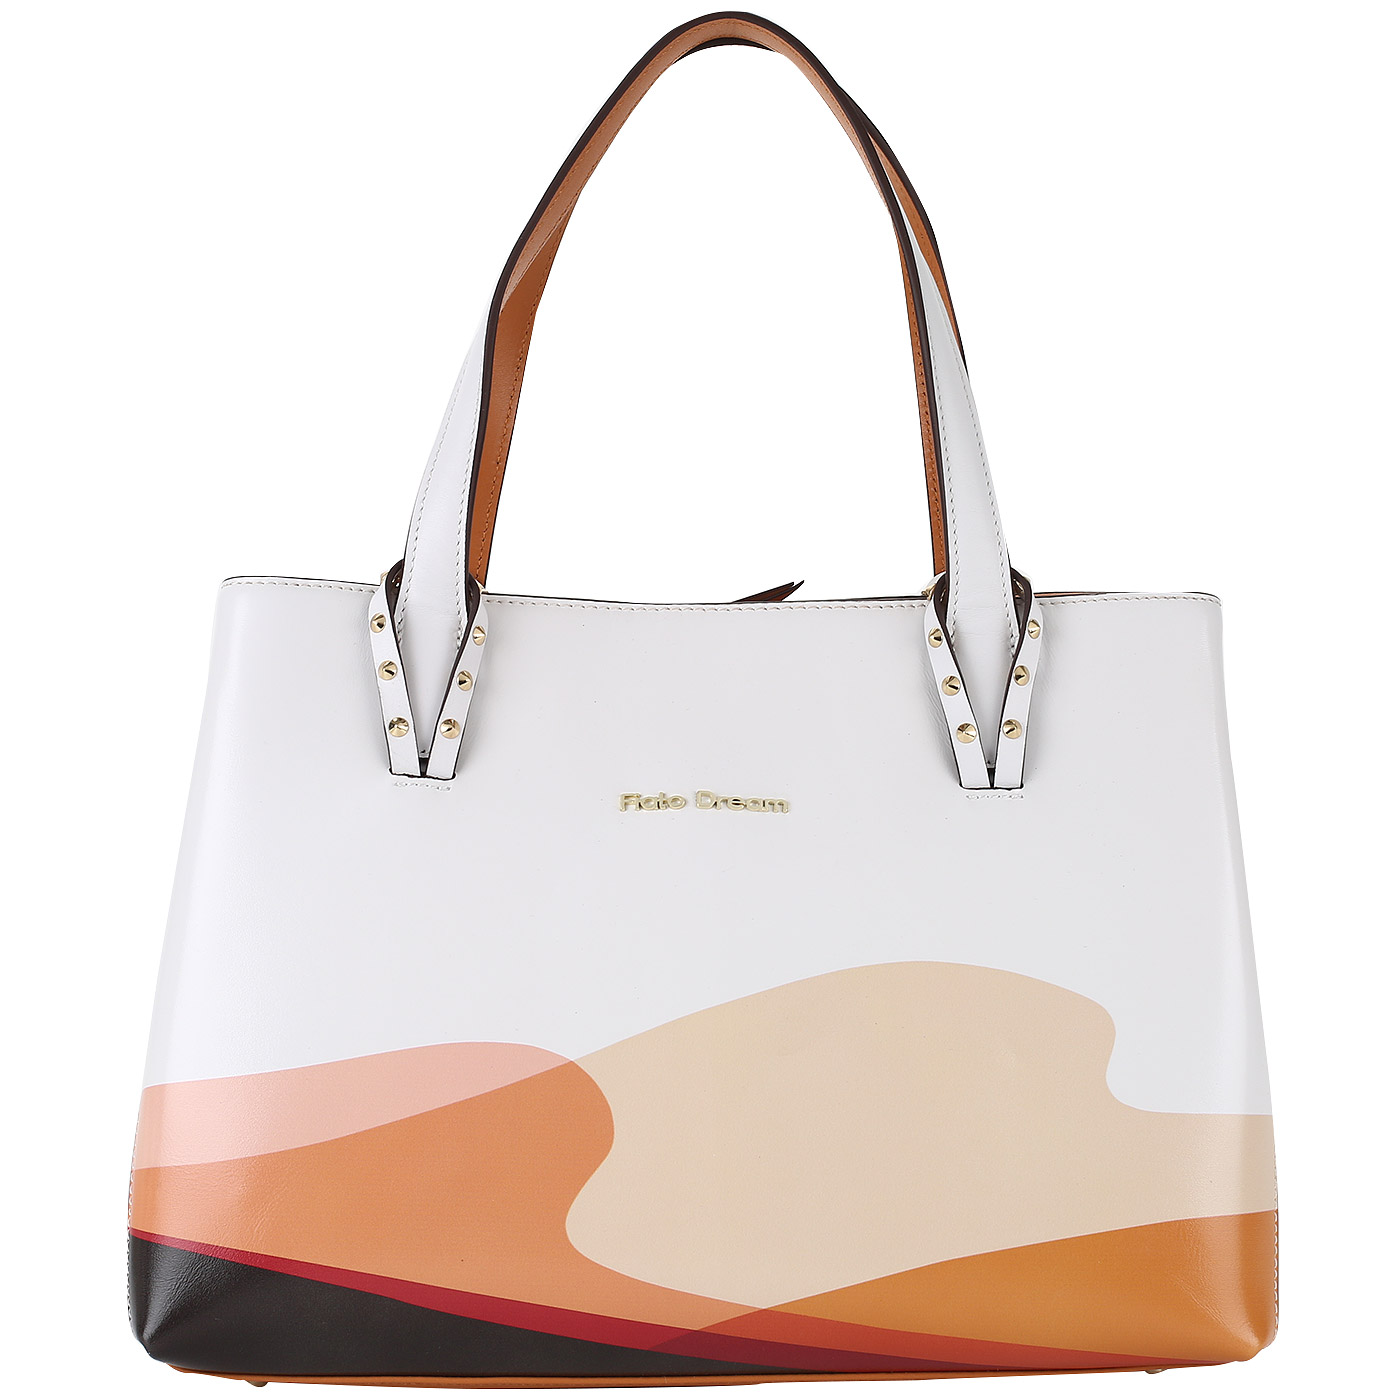 Fiato Dream Женская сумка из белой натуральной кожи